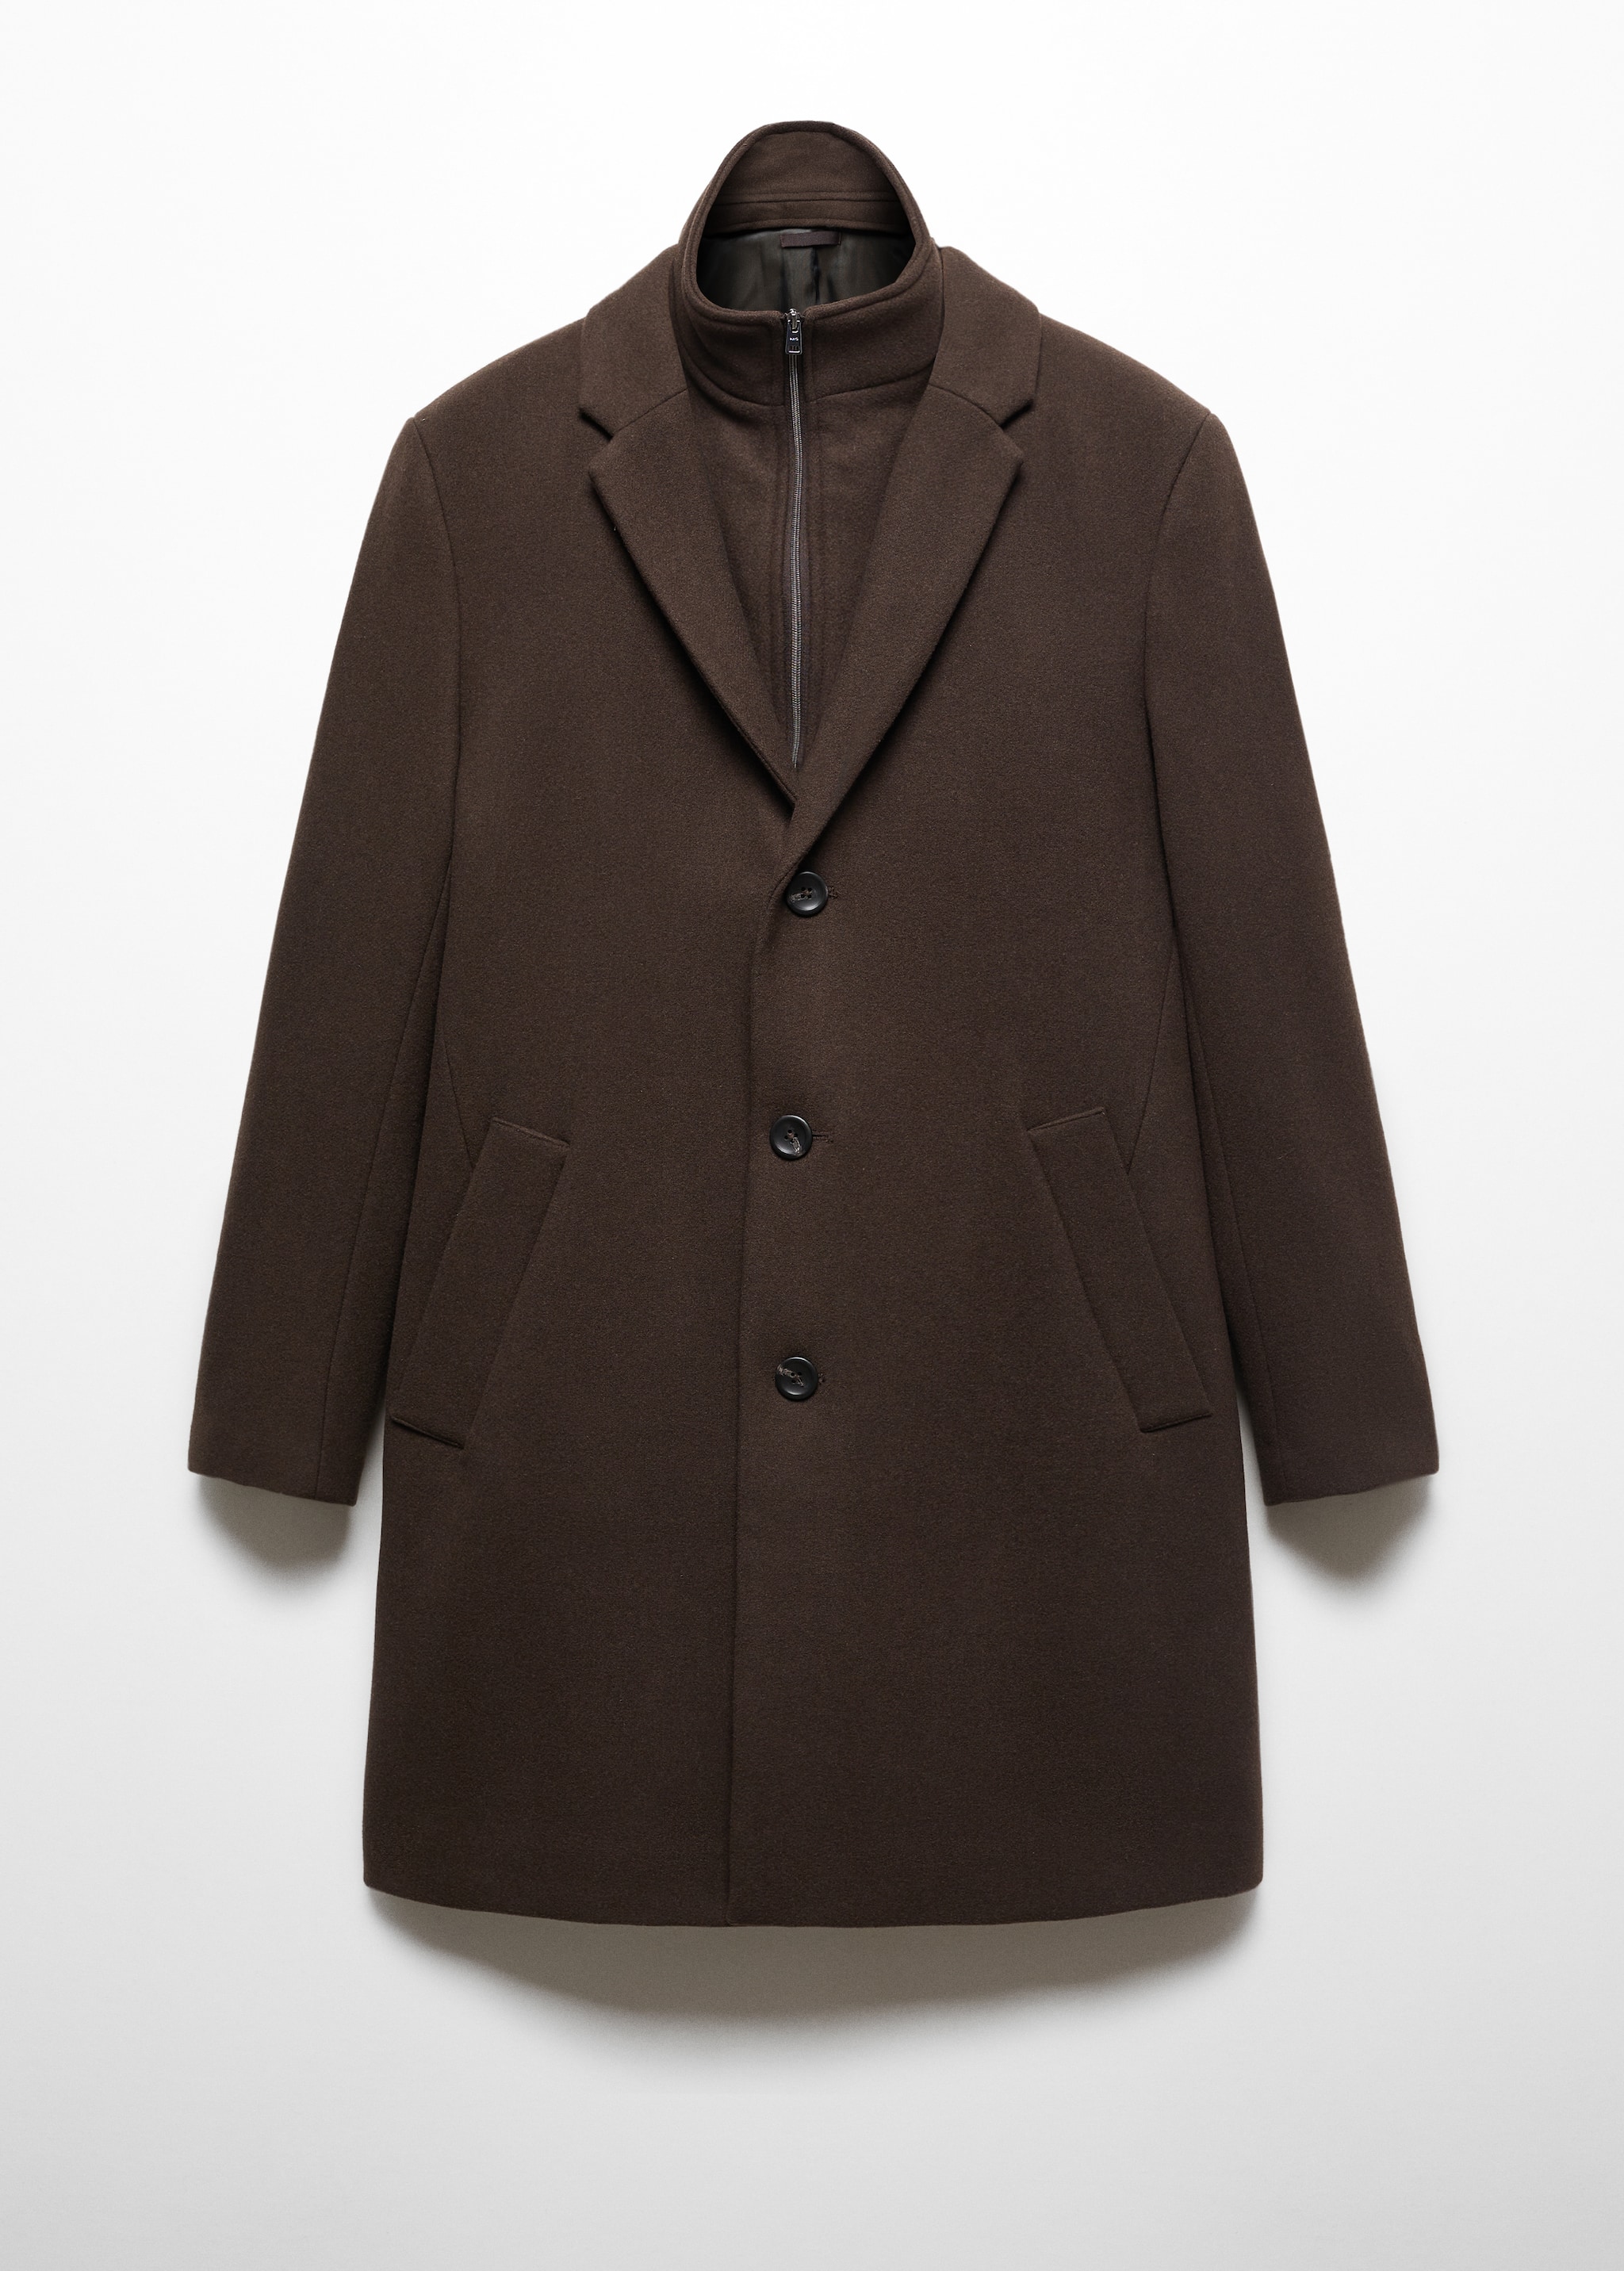 Пальто из шерсти со съемным воротником - Изделие без модели